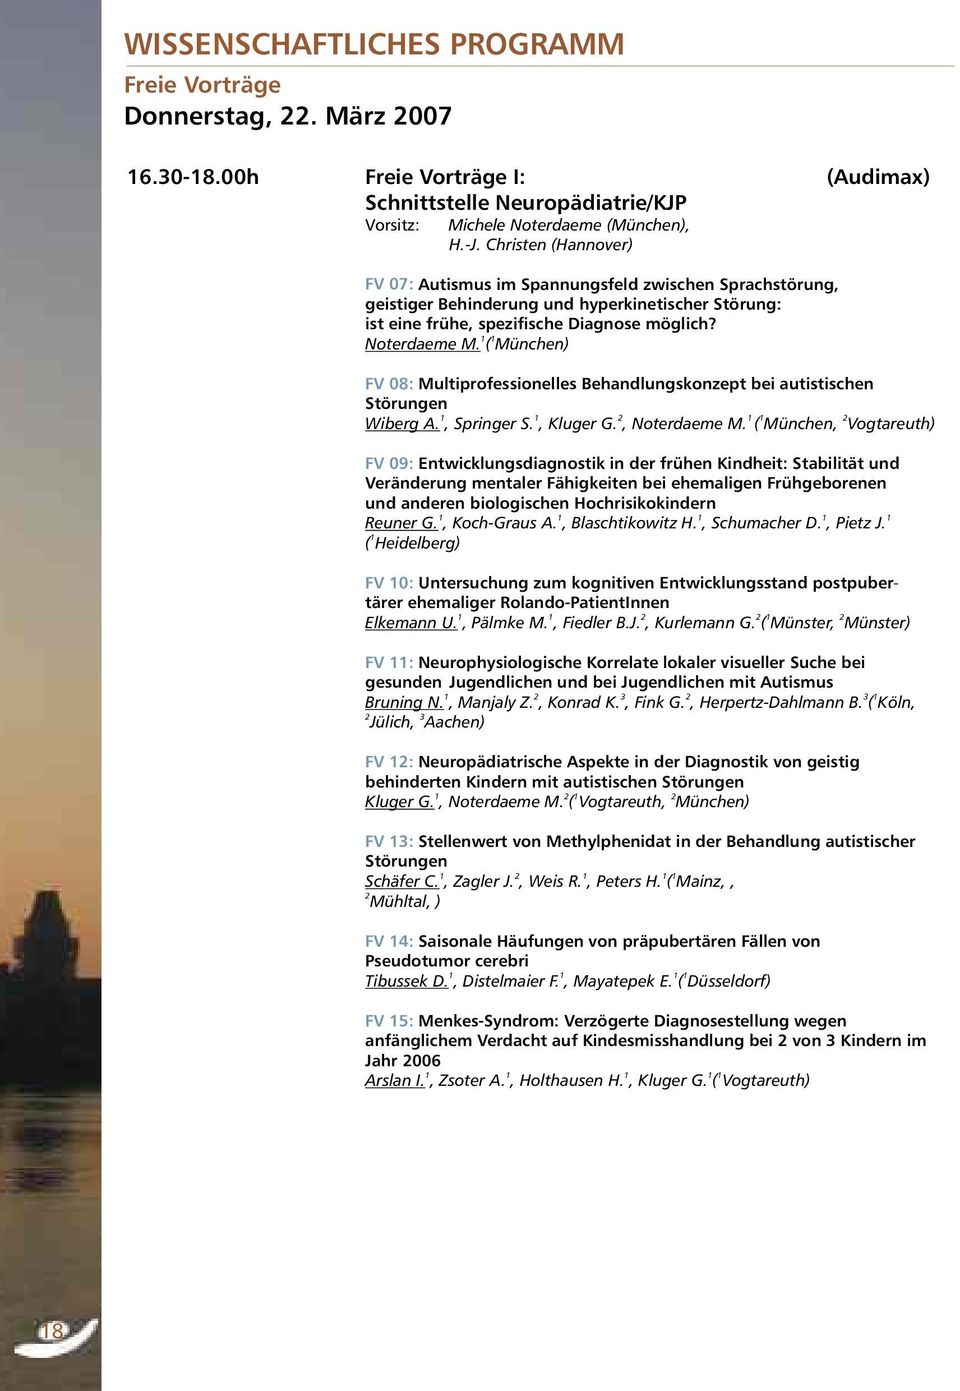 ( München) FV 08: Multiprofessionelles Behandlungskonzept bei autistischen Störungen 1 1 2 1 1 2 Wiberg A., Springer S., Kluger G., Noterdaeme M.